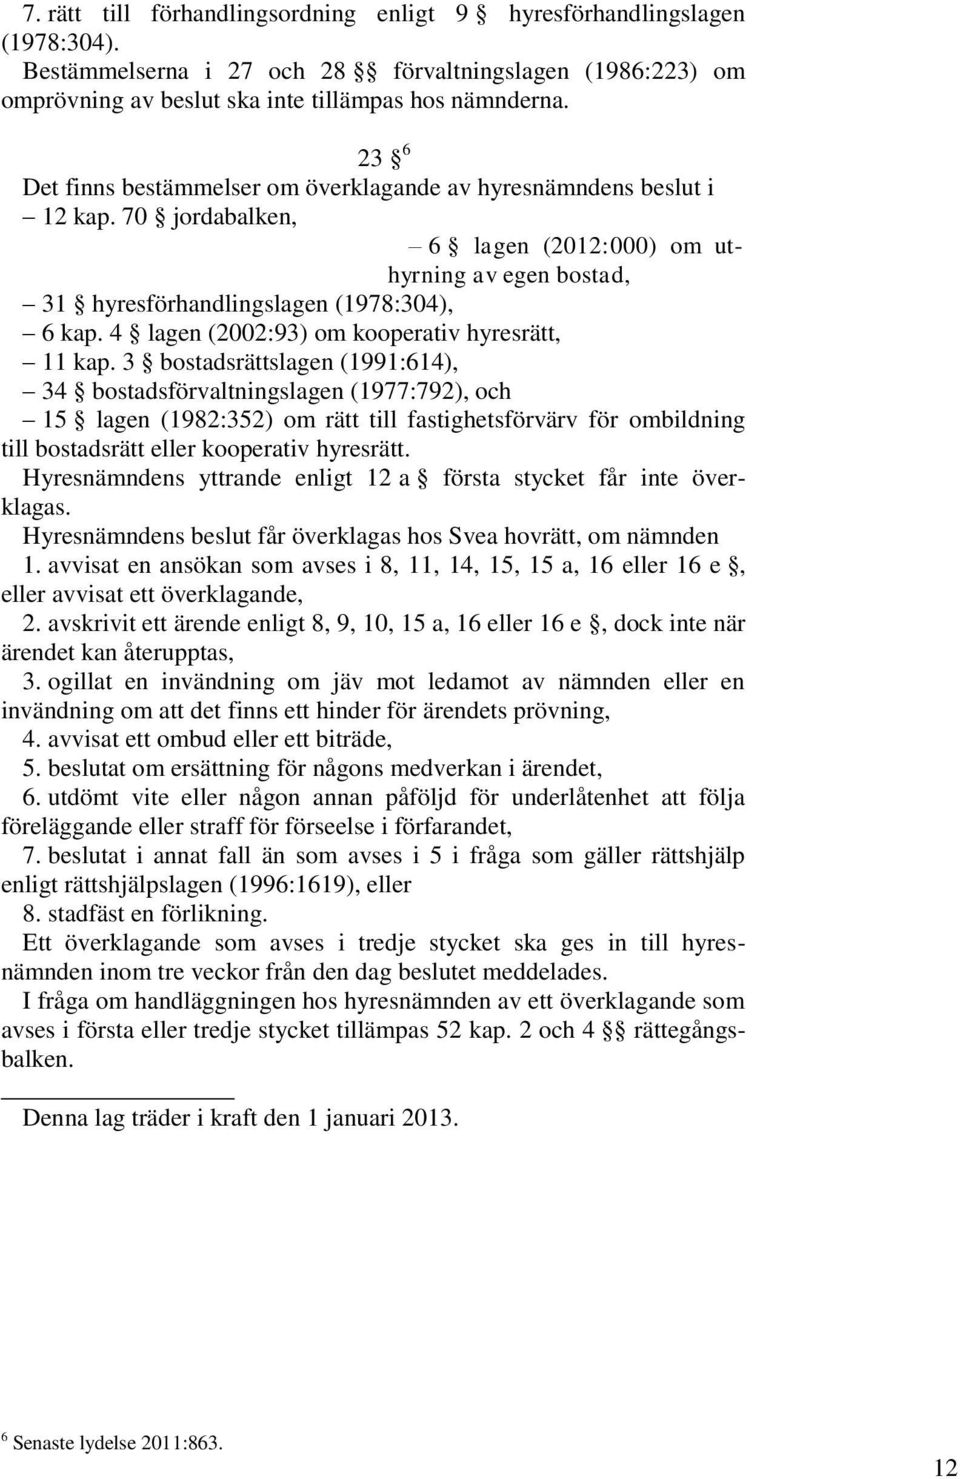 4 lagen (2002:93) om kooperativ hyresrätt, 11 kap.